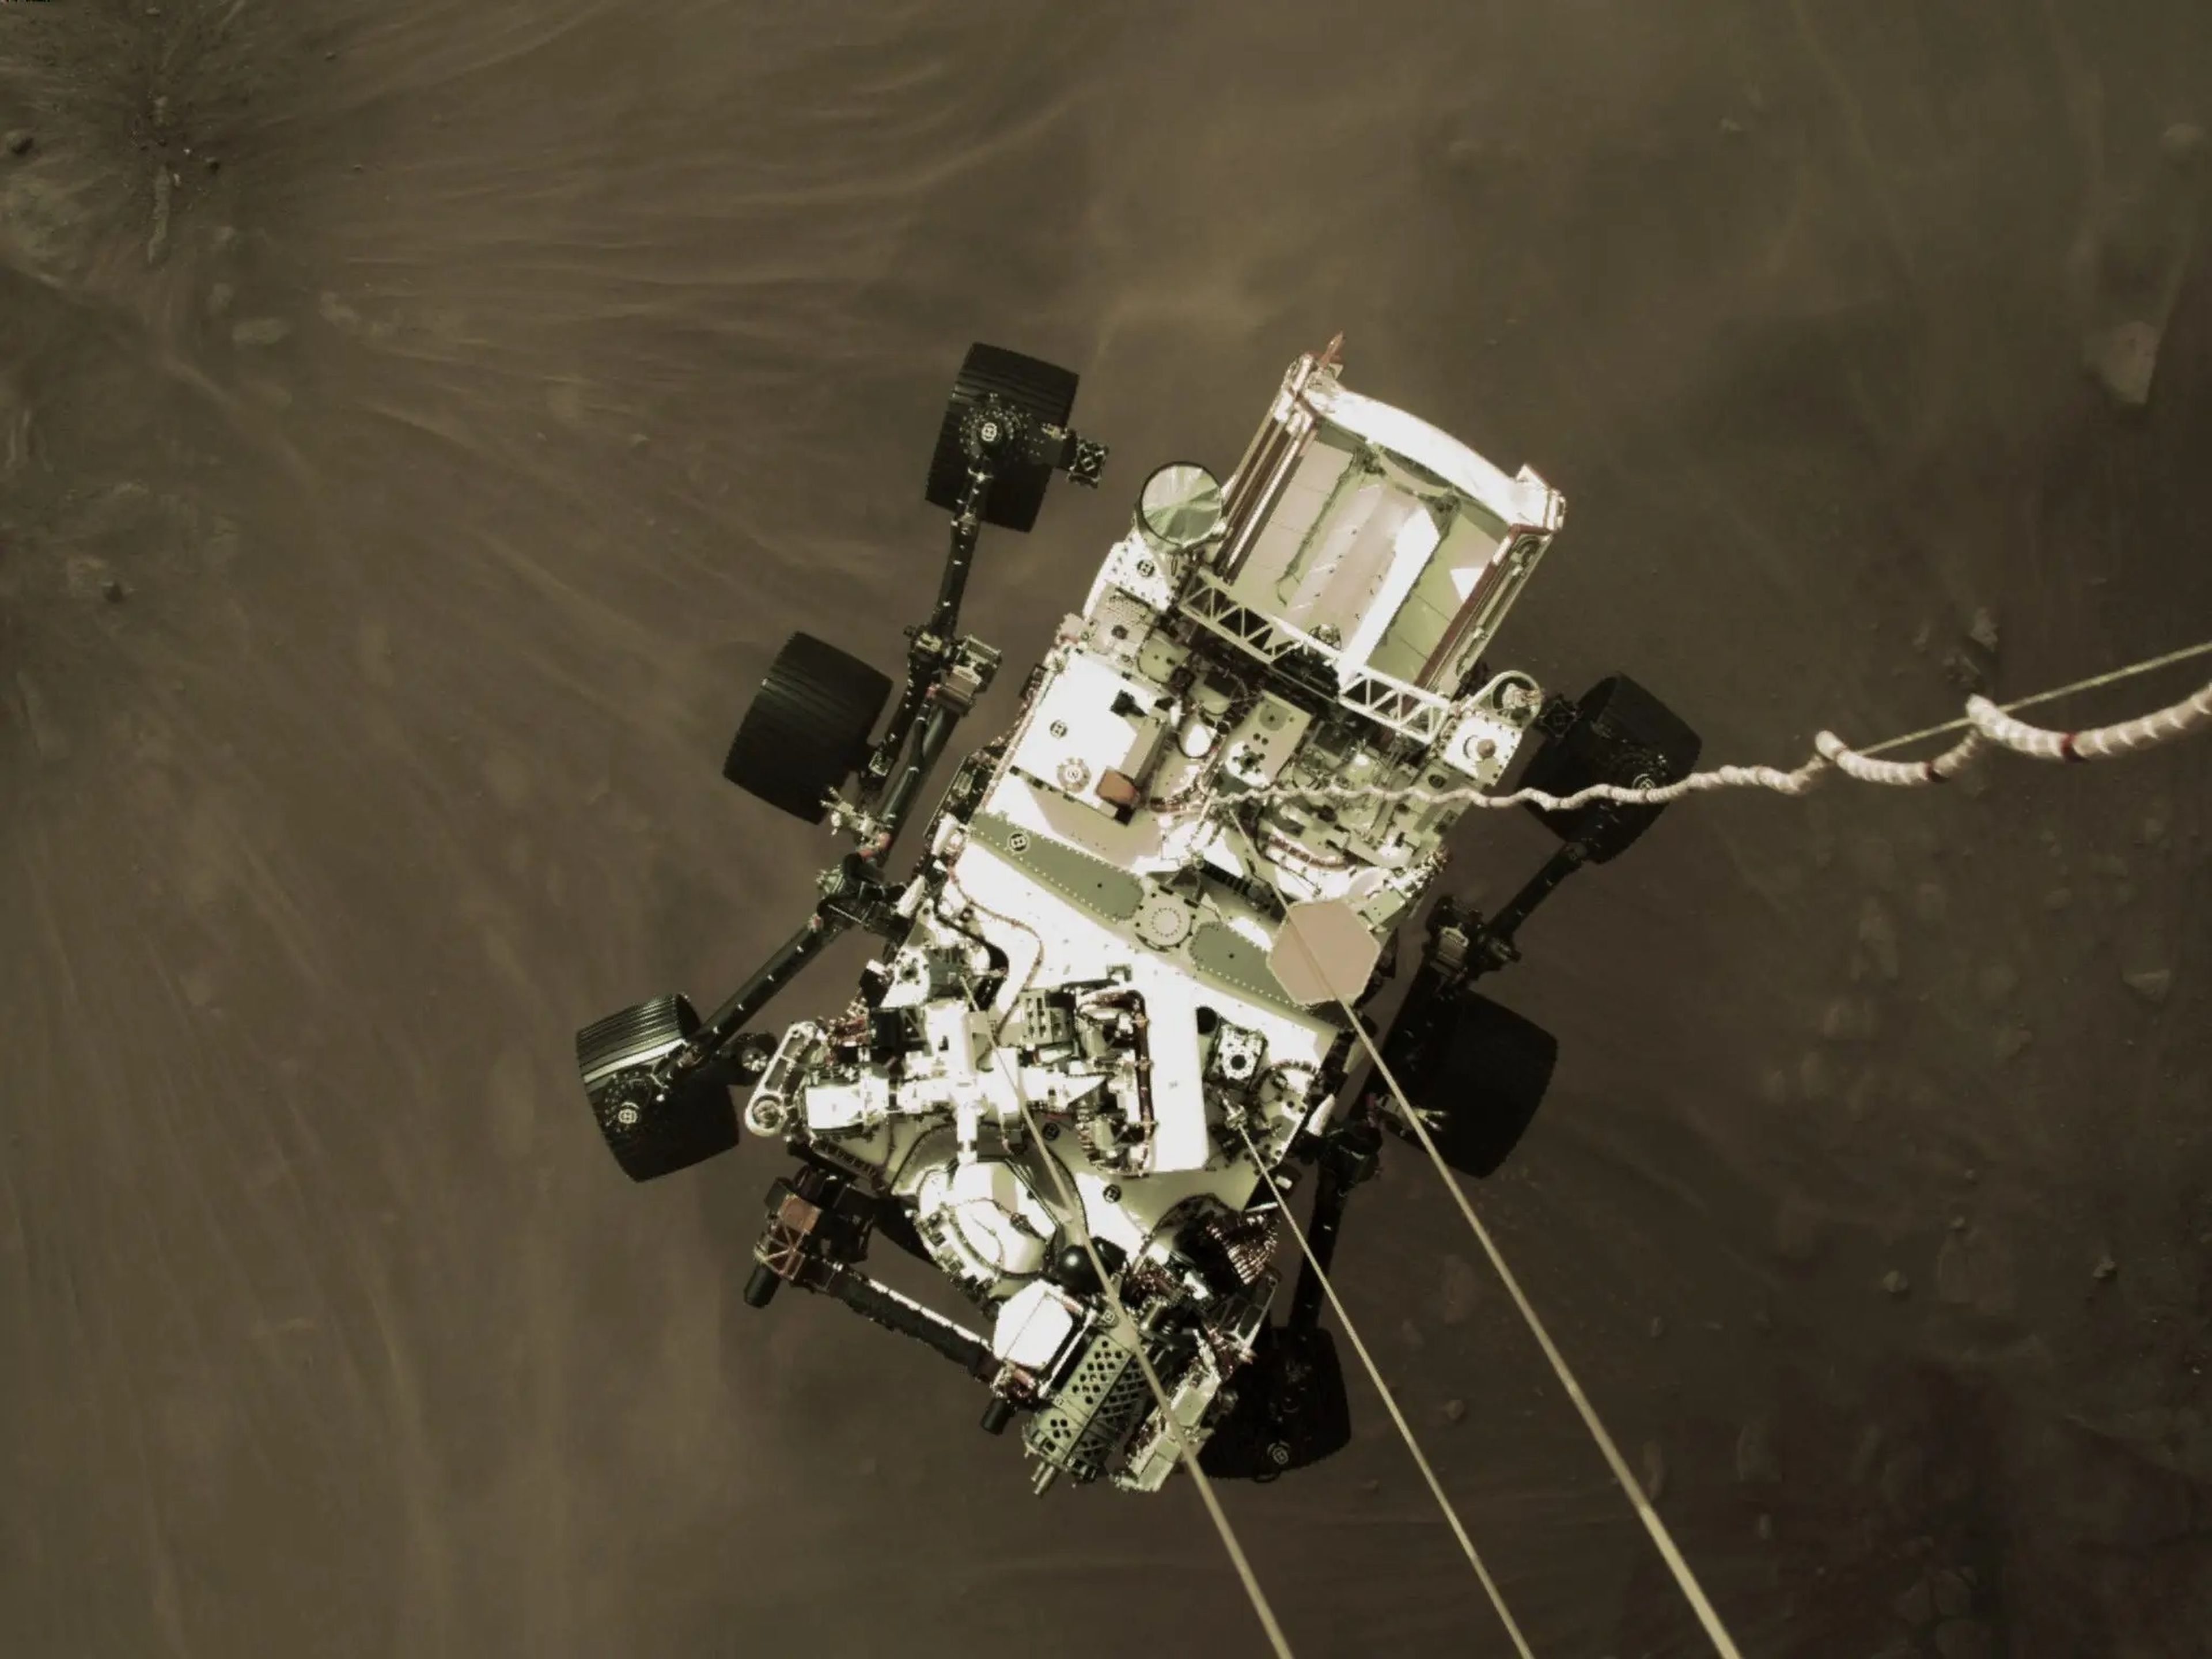 Una foto del rover Perseverance de la NASA a pocos metros sobre la superficie marciana, parte de un video que varias cámaras grabaron del aterrizaje el 18 de febrero de 2021.